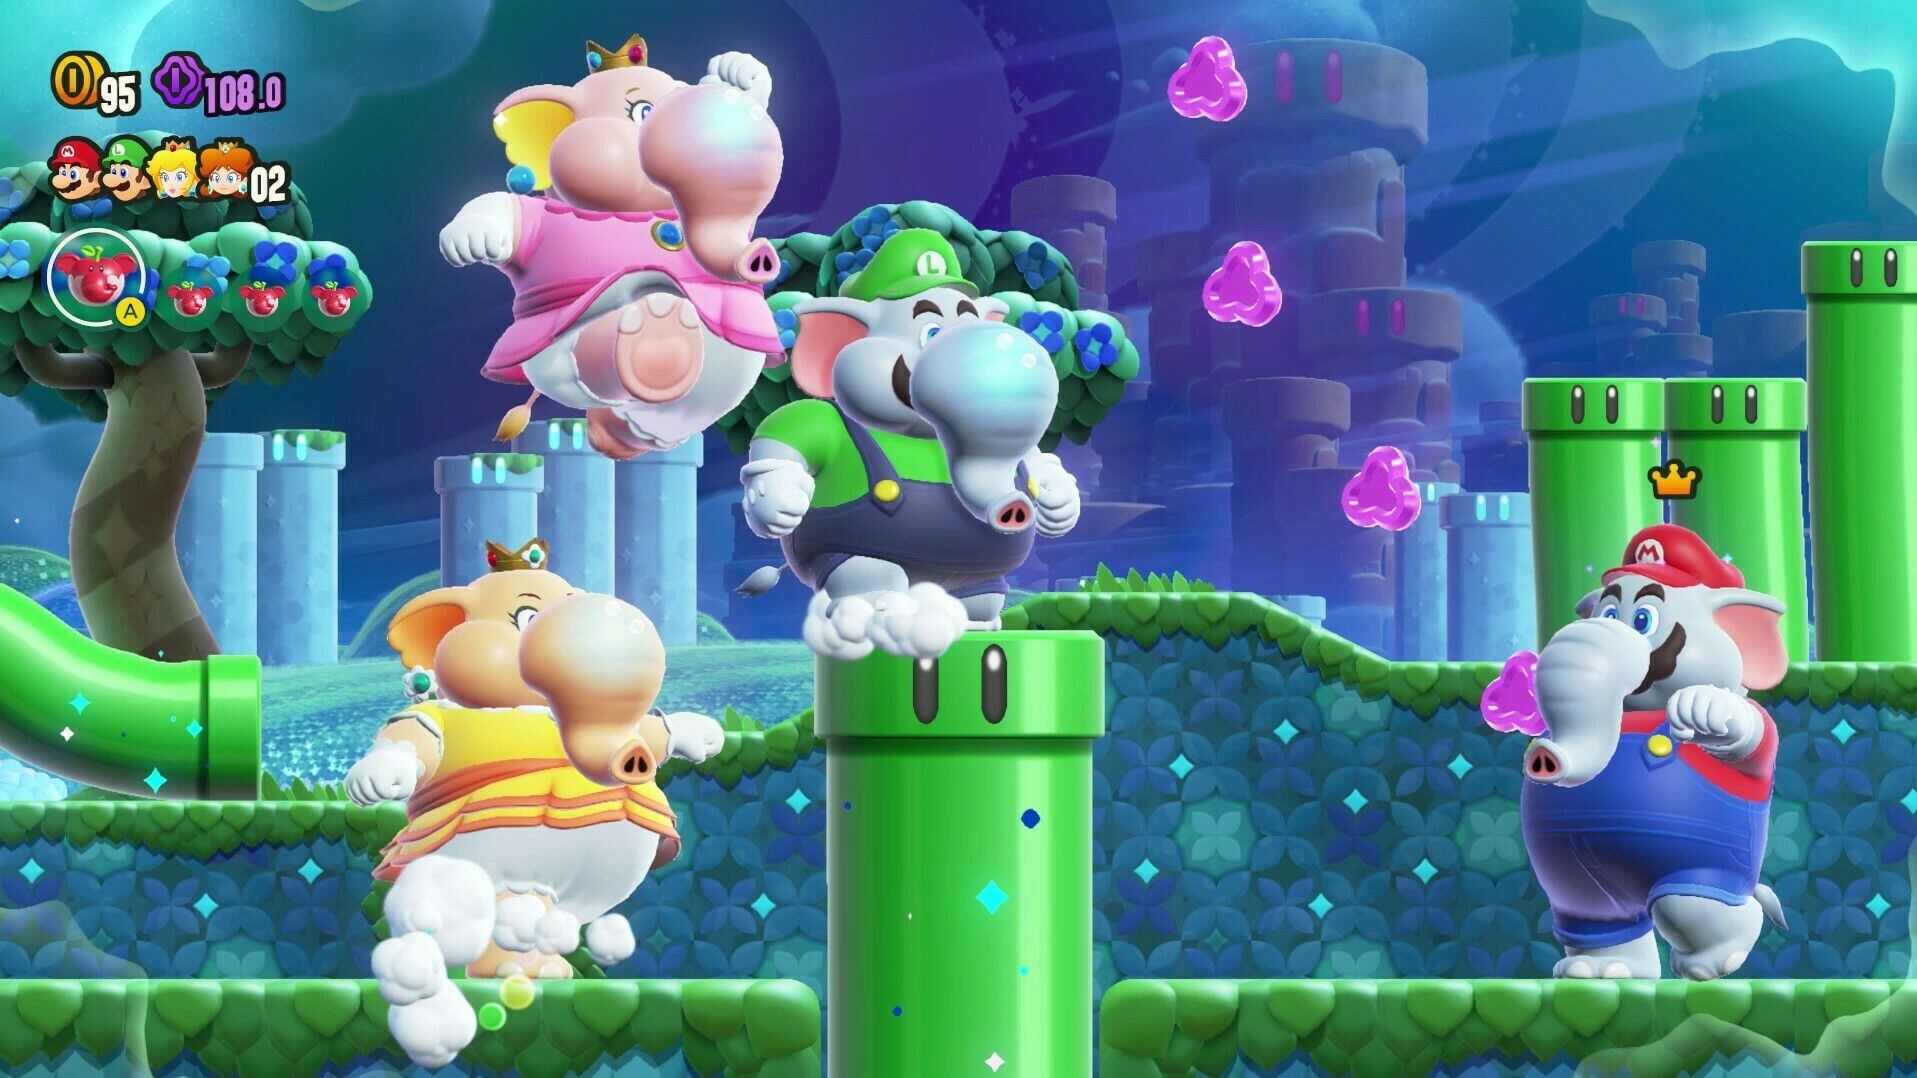 Como es clásico de los juegos de Mario, cuatro jugadores pueden jugar a la vez en una misma partida. 'Super Mario Bros Wonder' tomará lugar en el mundo central del archipiélago Pétalo, donde se encuentra el Reino Flor. 